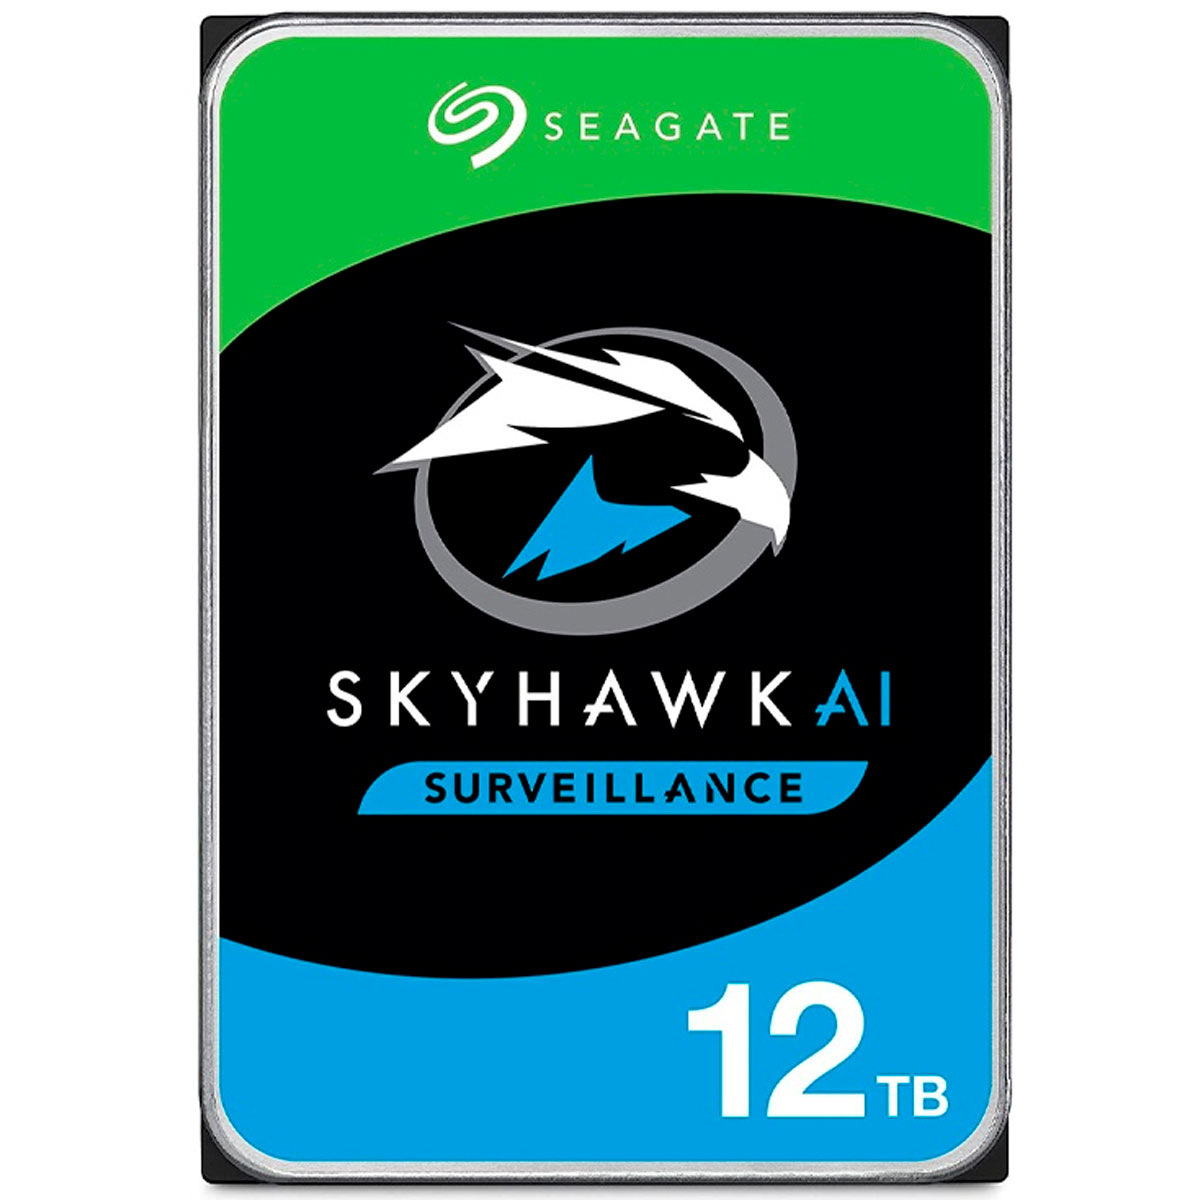 HD 12TB SATA - 7200RPM - 256MB Cache - Seagate SkyHawk AI Surveillance - ST12000VE0008 - Ideal para Vigilância